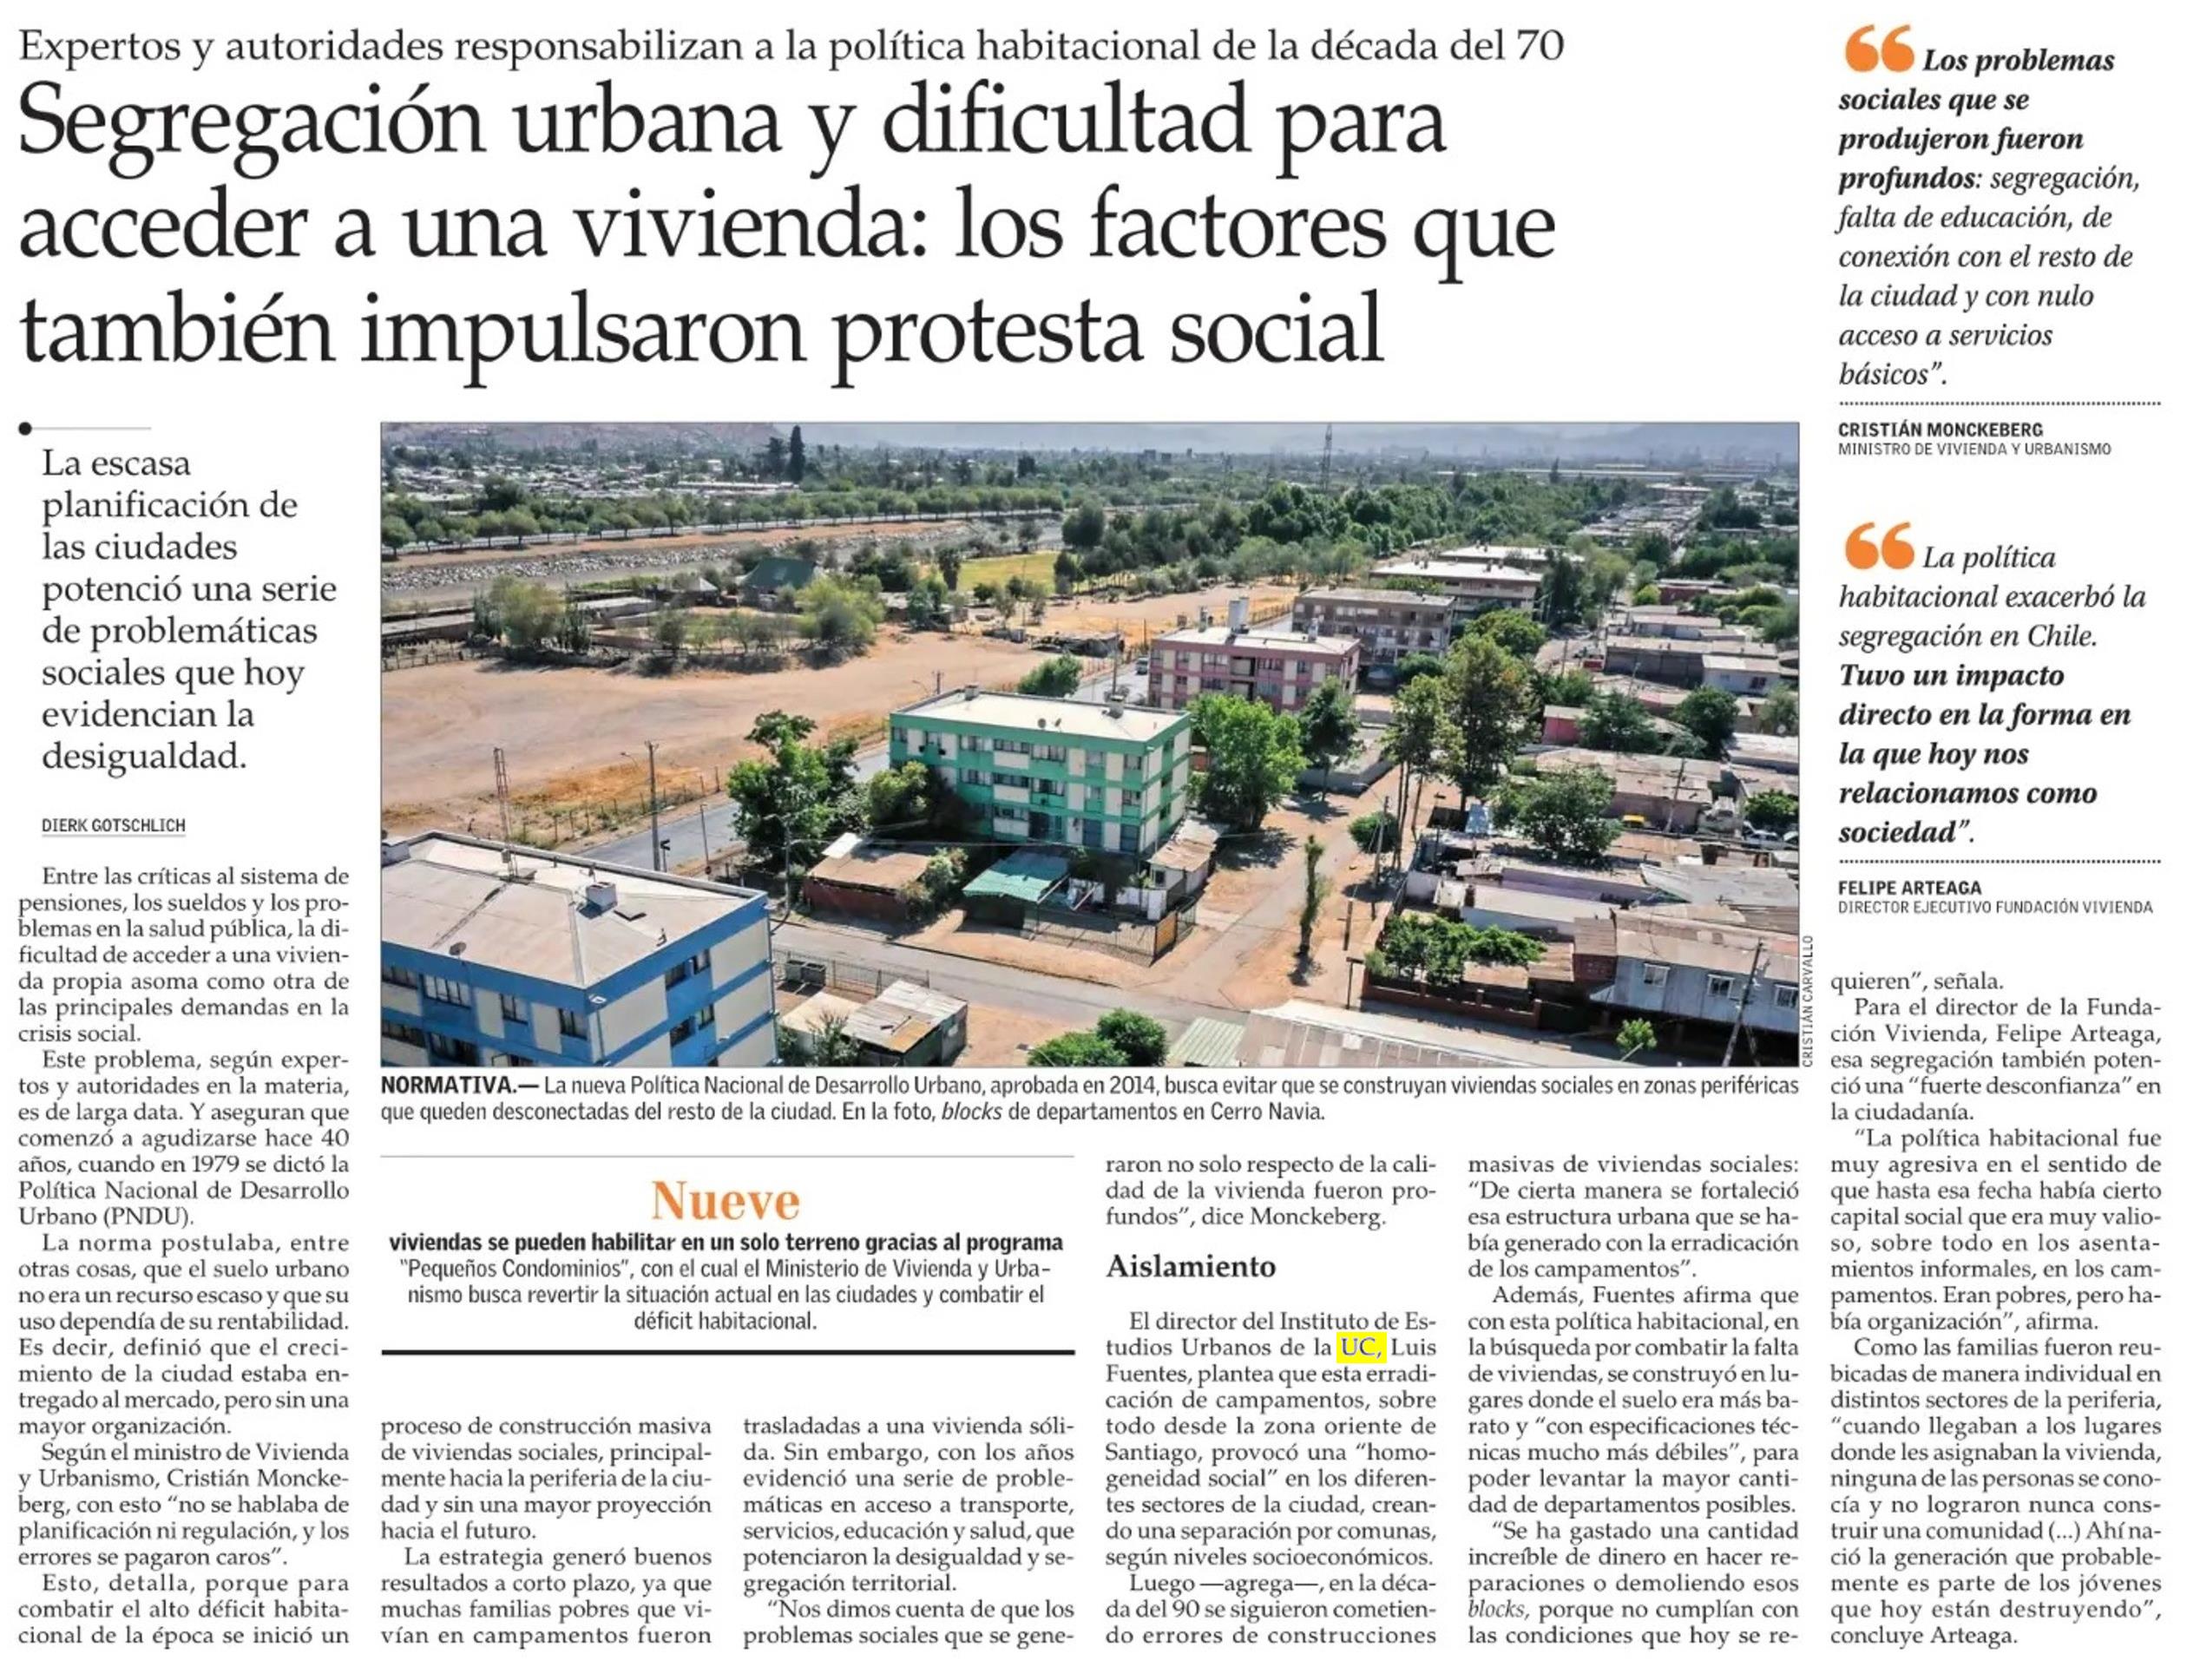 El Mercurio: segregación urbana y dificultad para acceder a una vivienda, los factores que también impulsaron protesta social